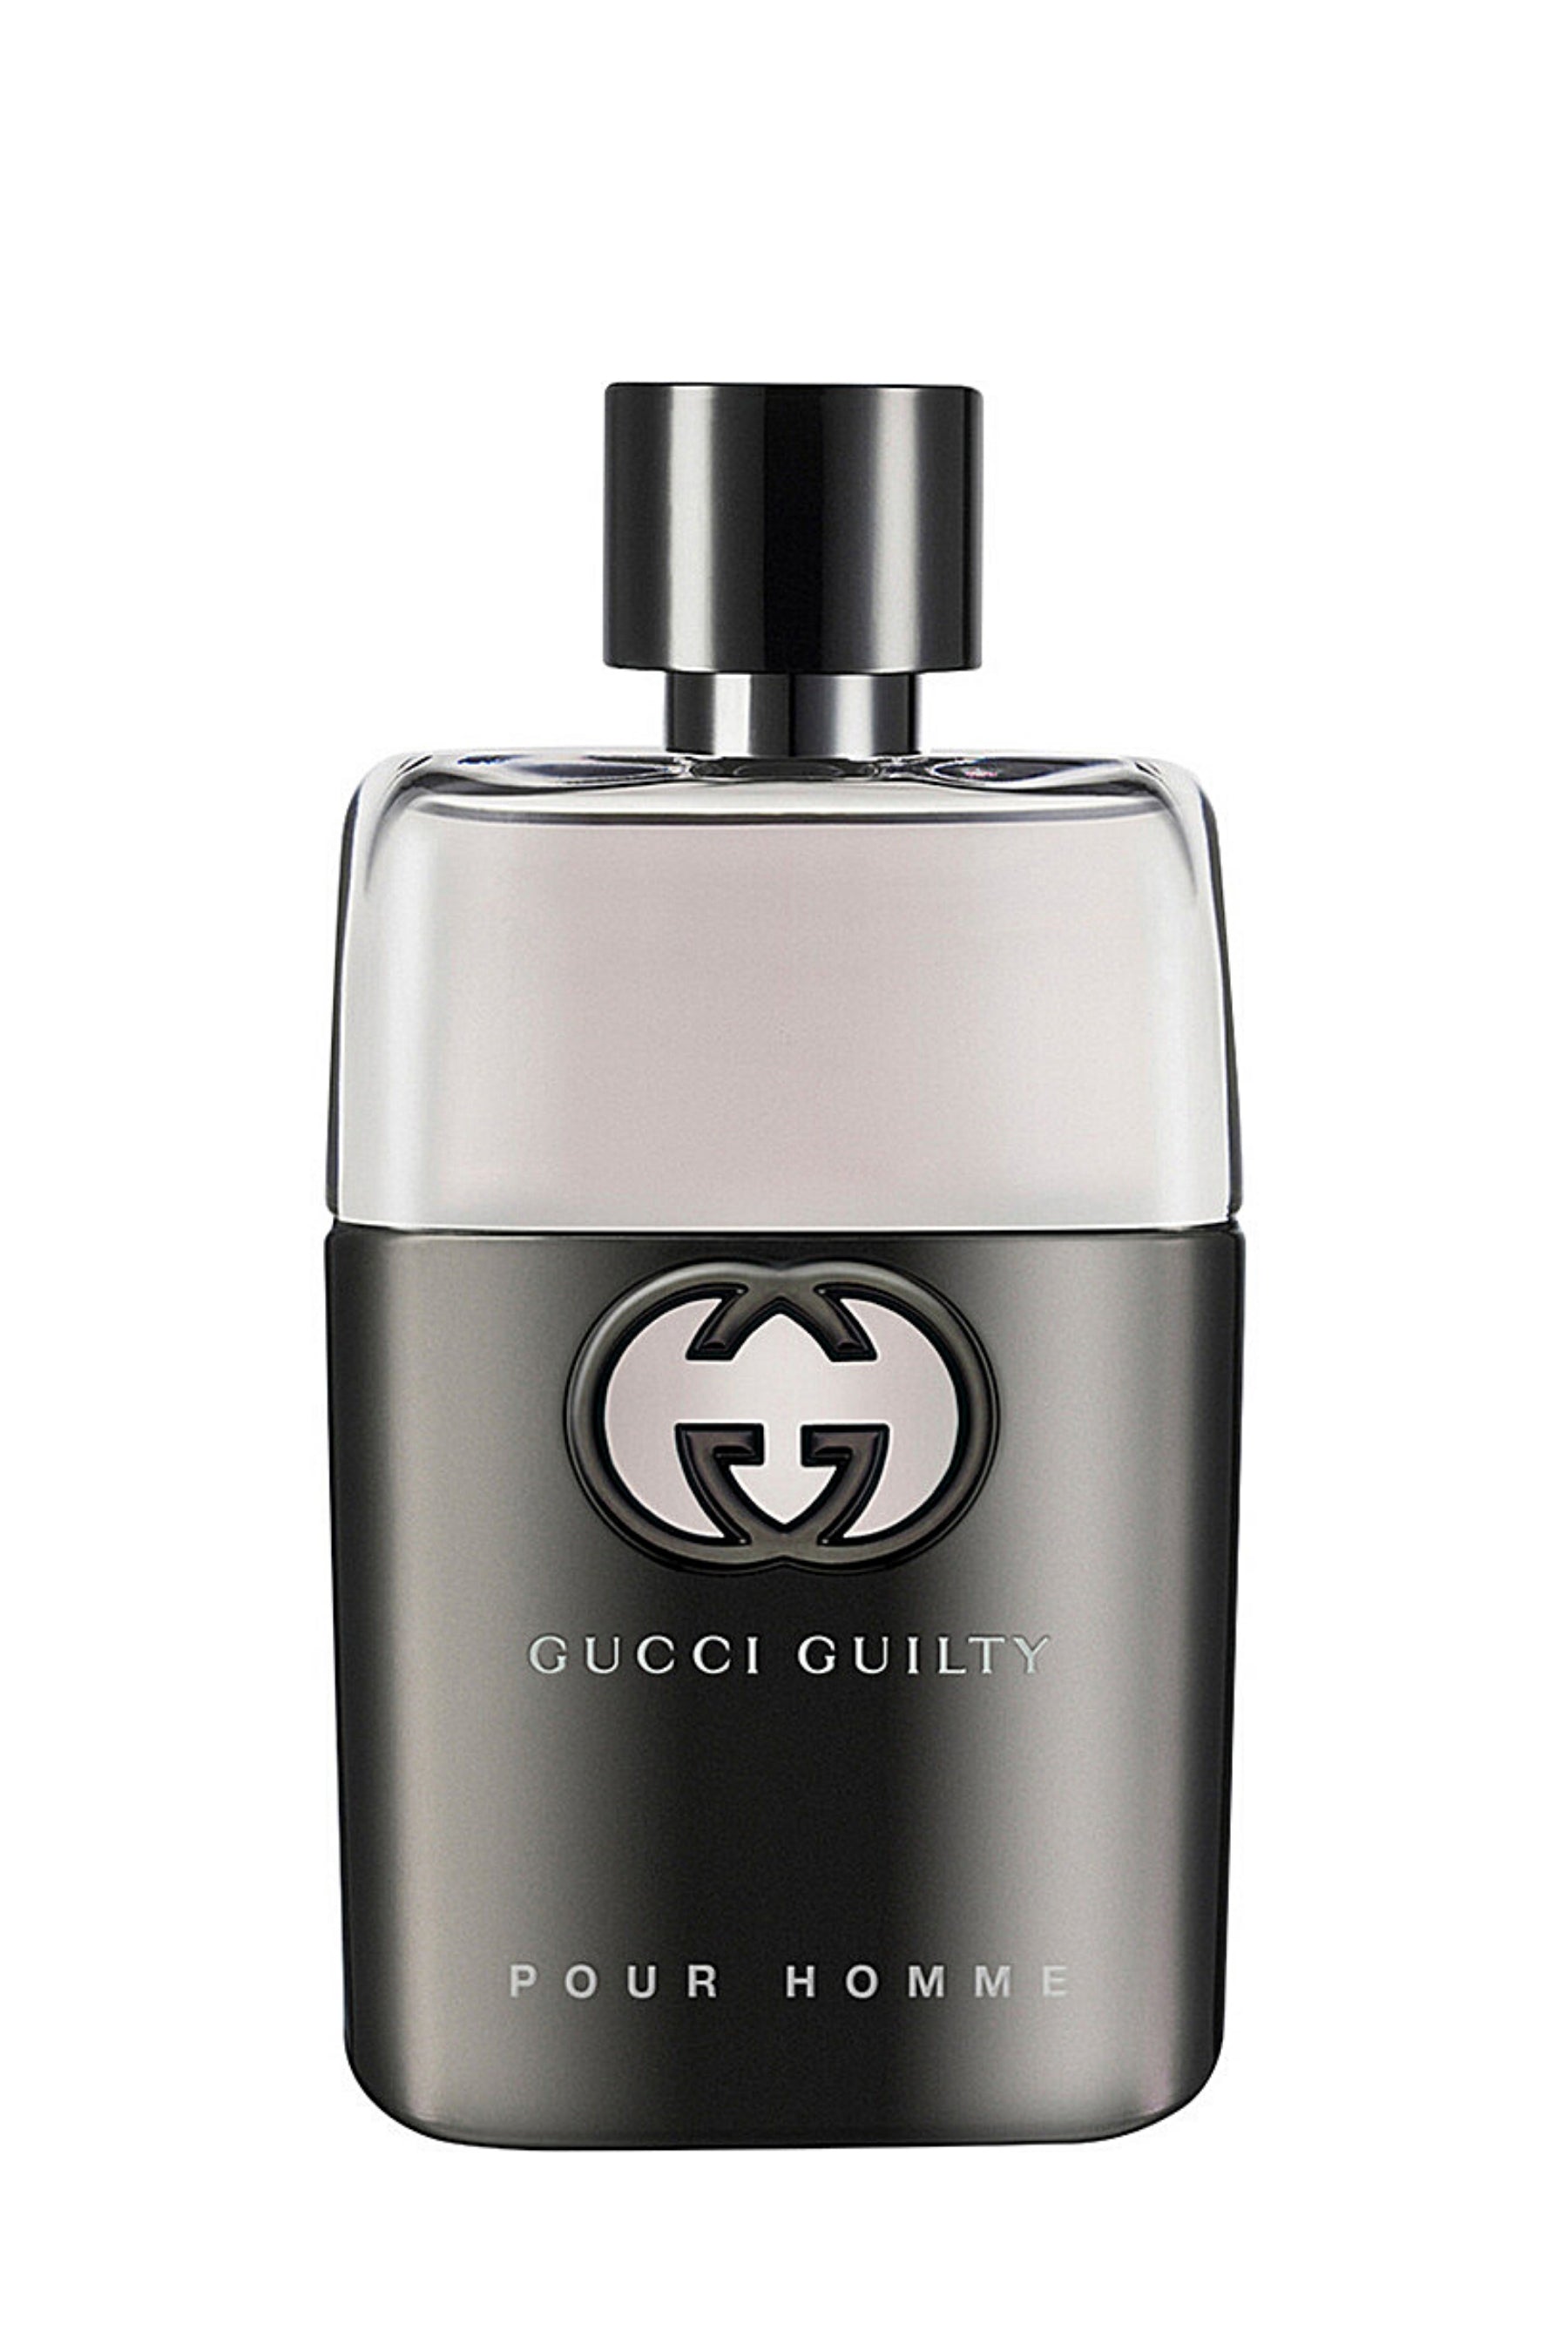 Gucci | Guilty For Men 2 Piece Set Eau de Toilette 1.6 fl oz